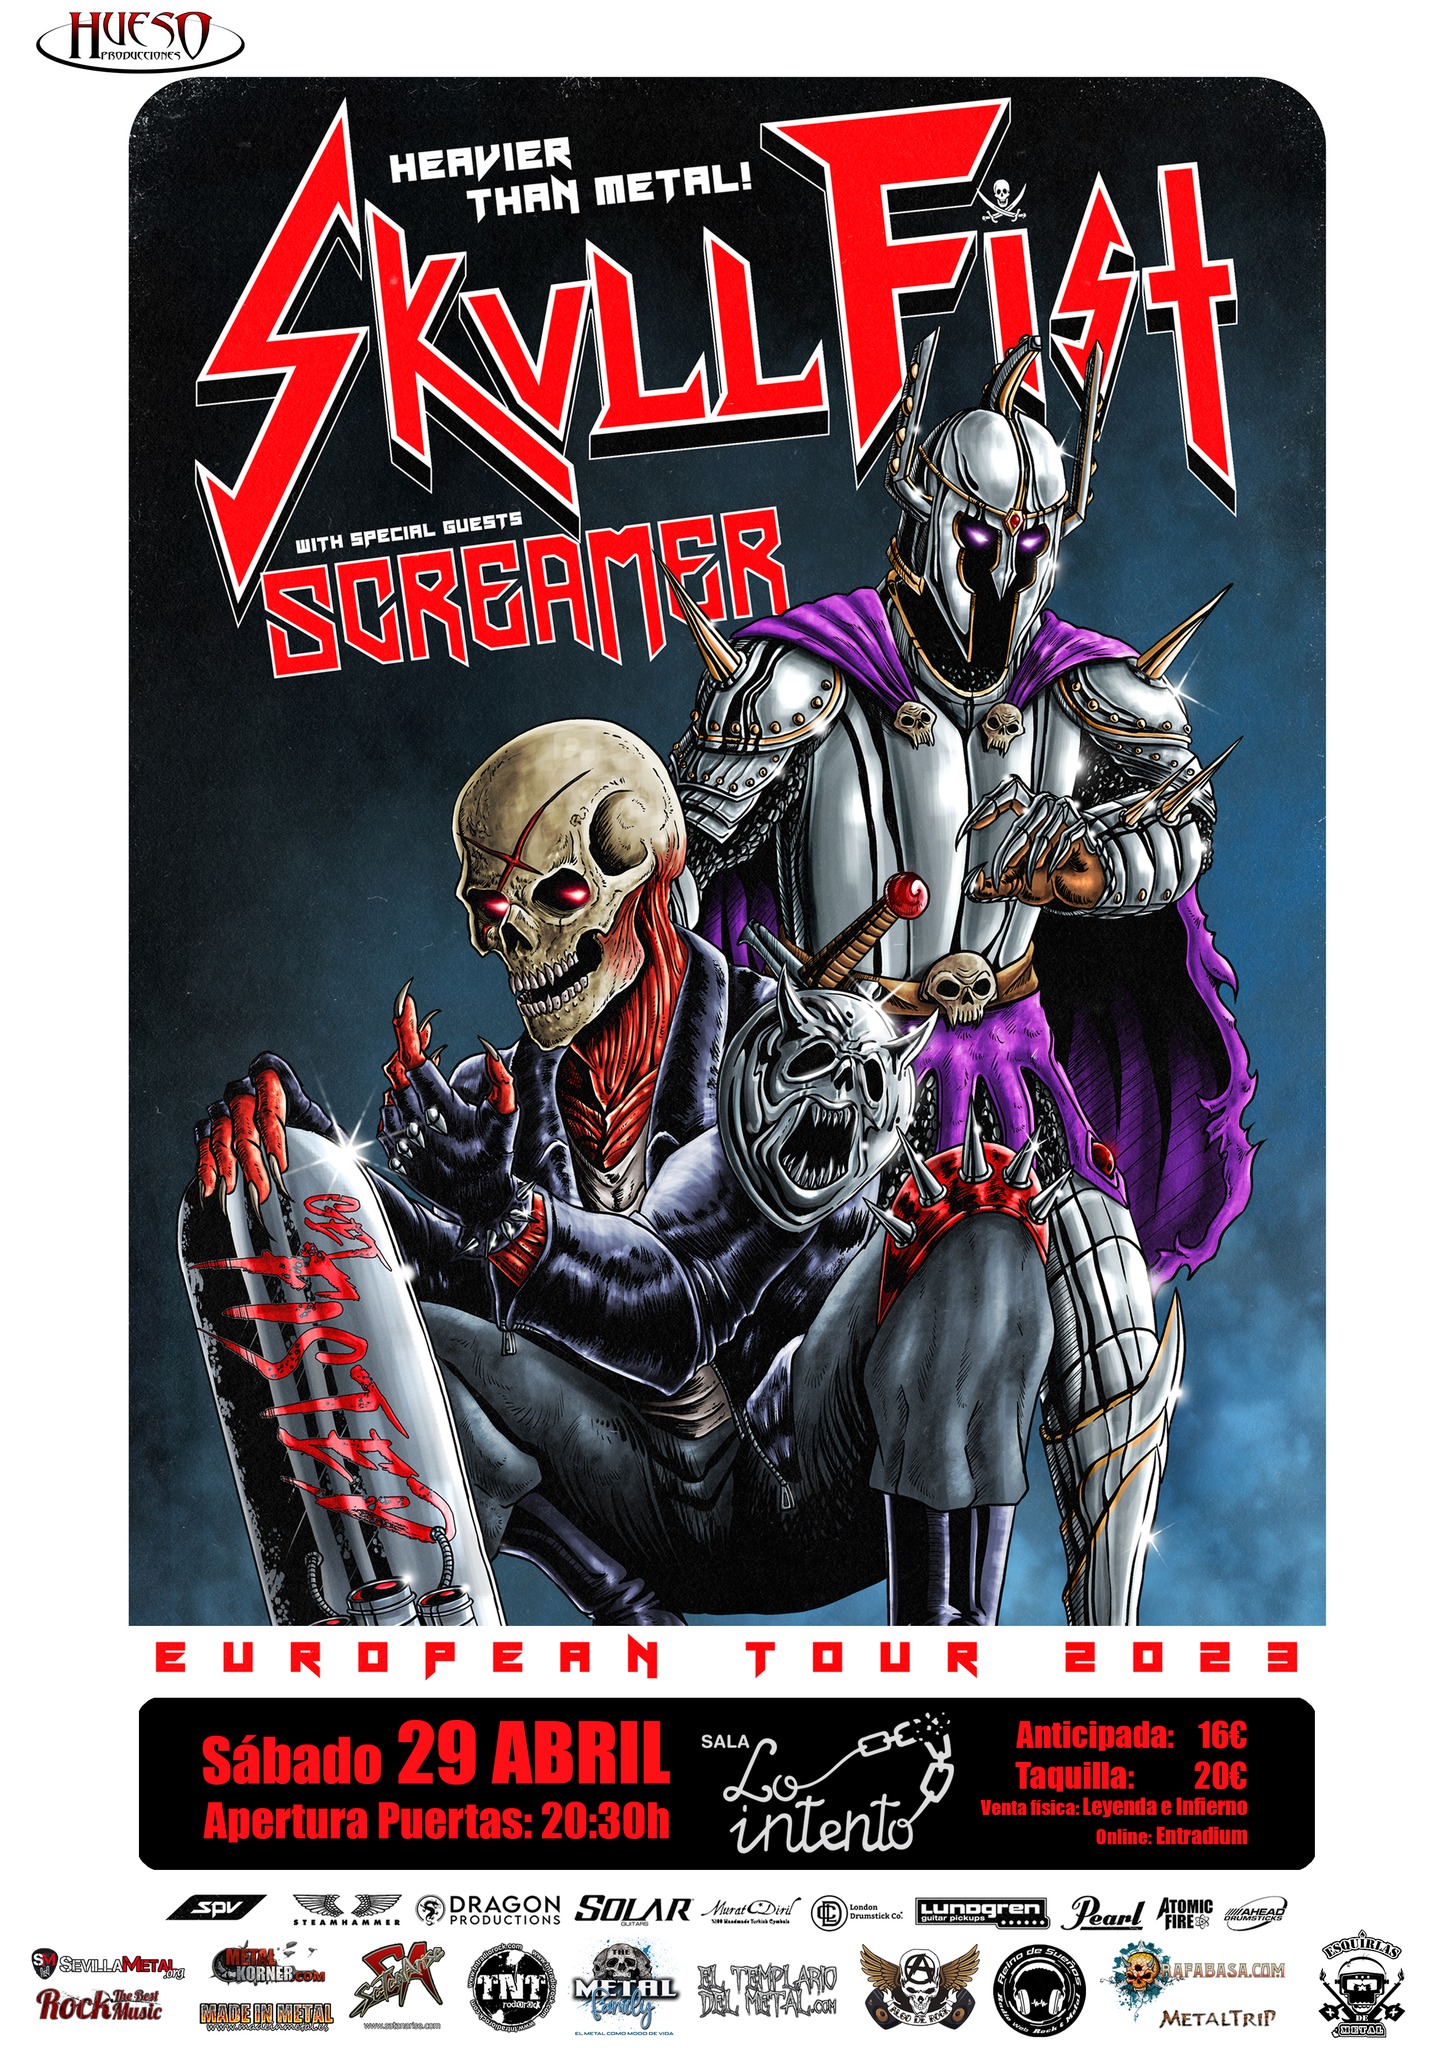 Skull Fist estará actuando el 29 de abril en Zaragoza acompañados de los suecos Screamer